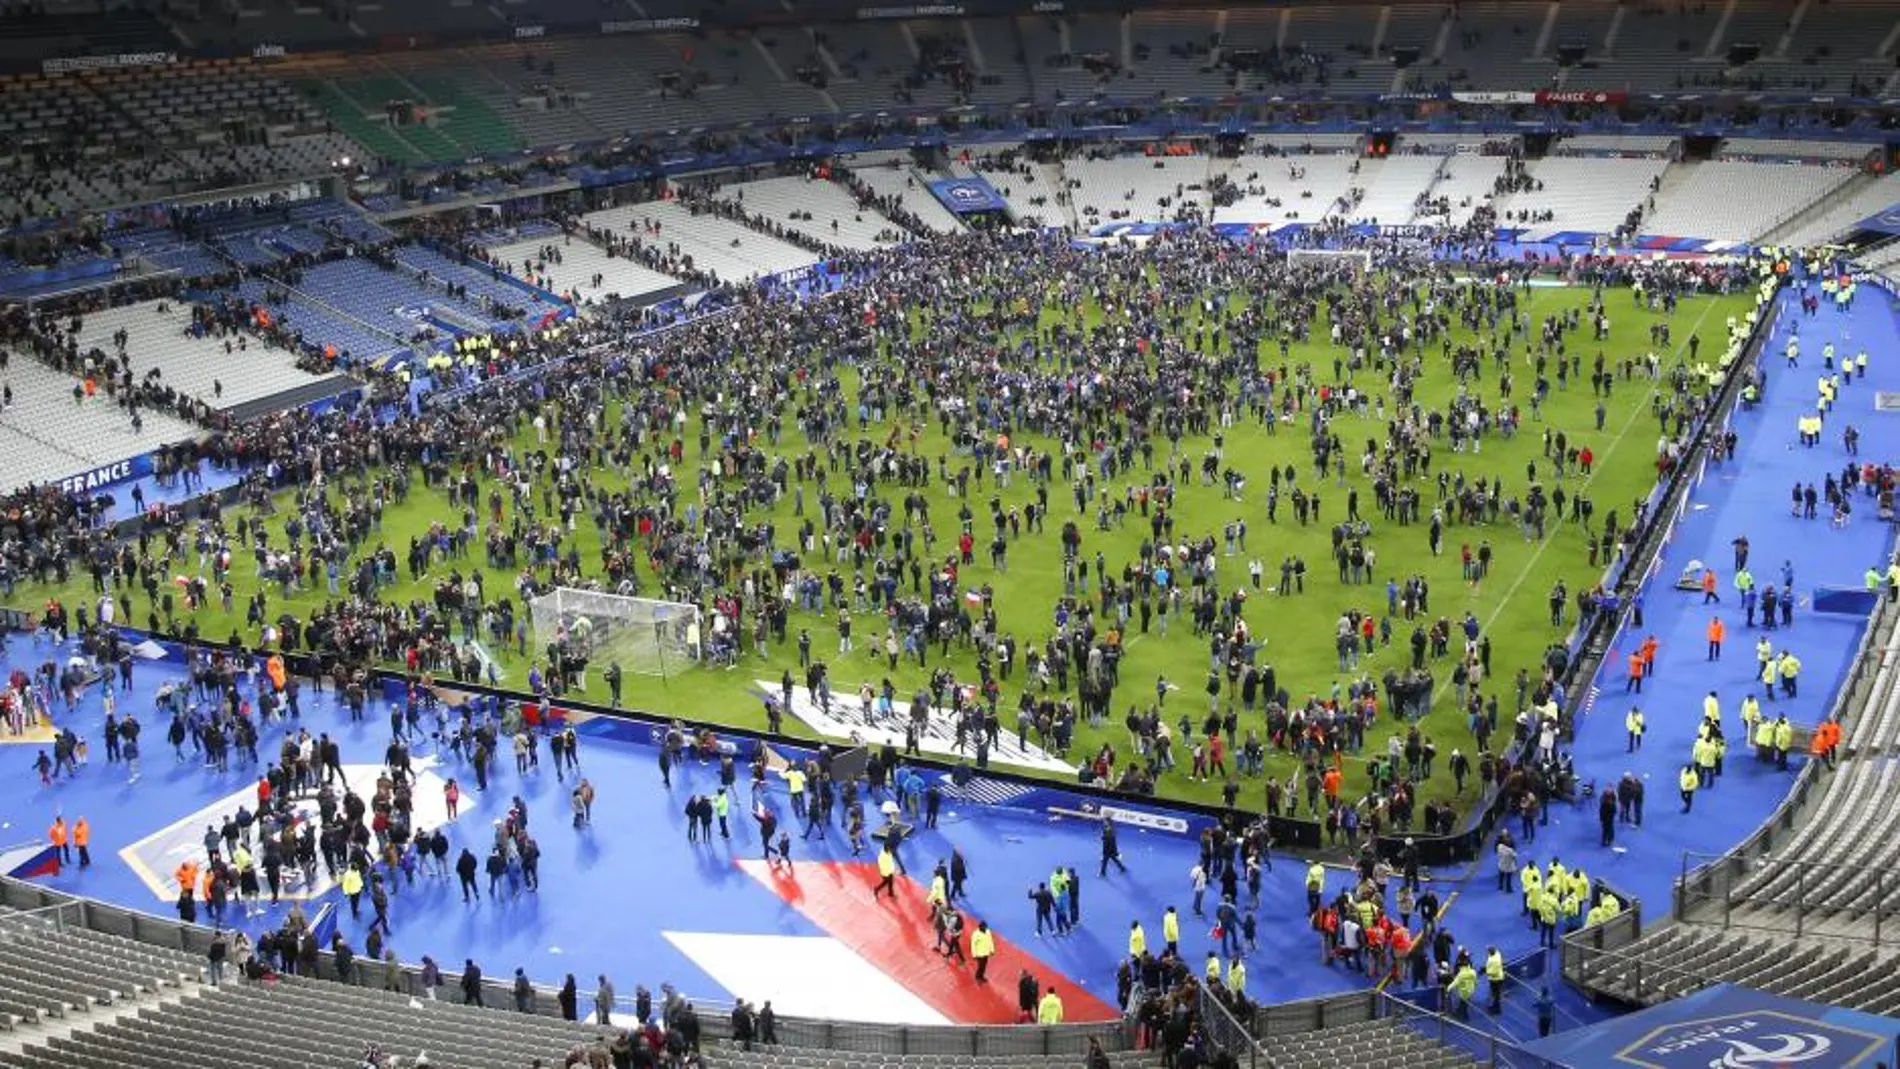 Los espectadores invaden el césped del Stade de France la noche del 13N tras las explosiones en los alrededores.